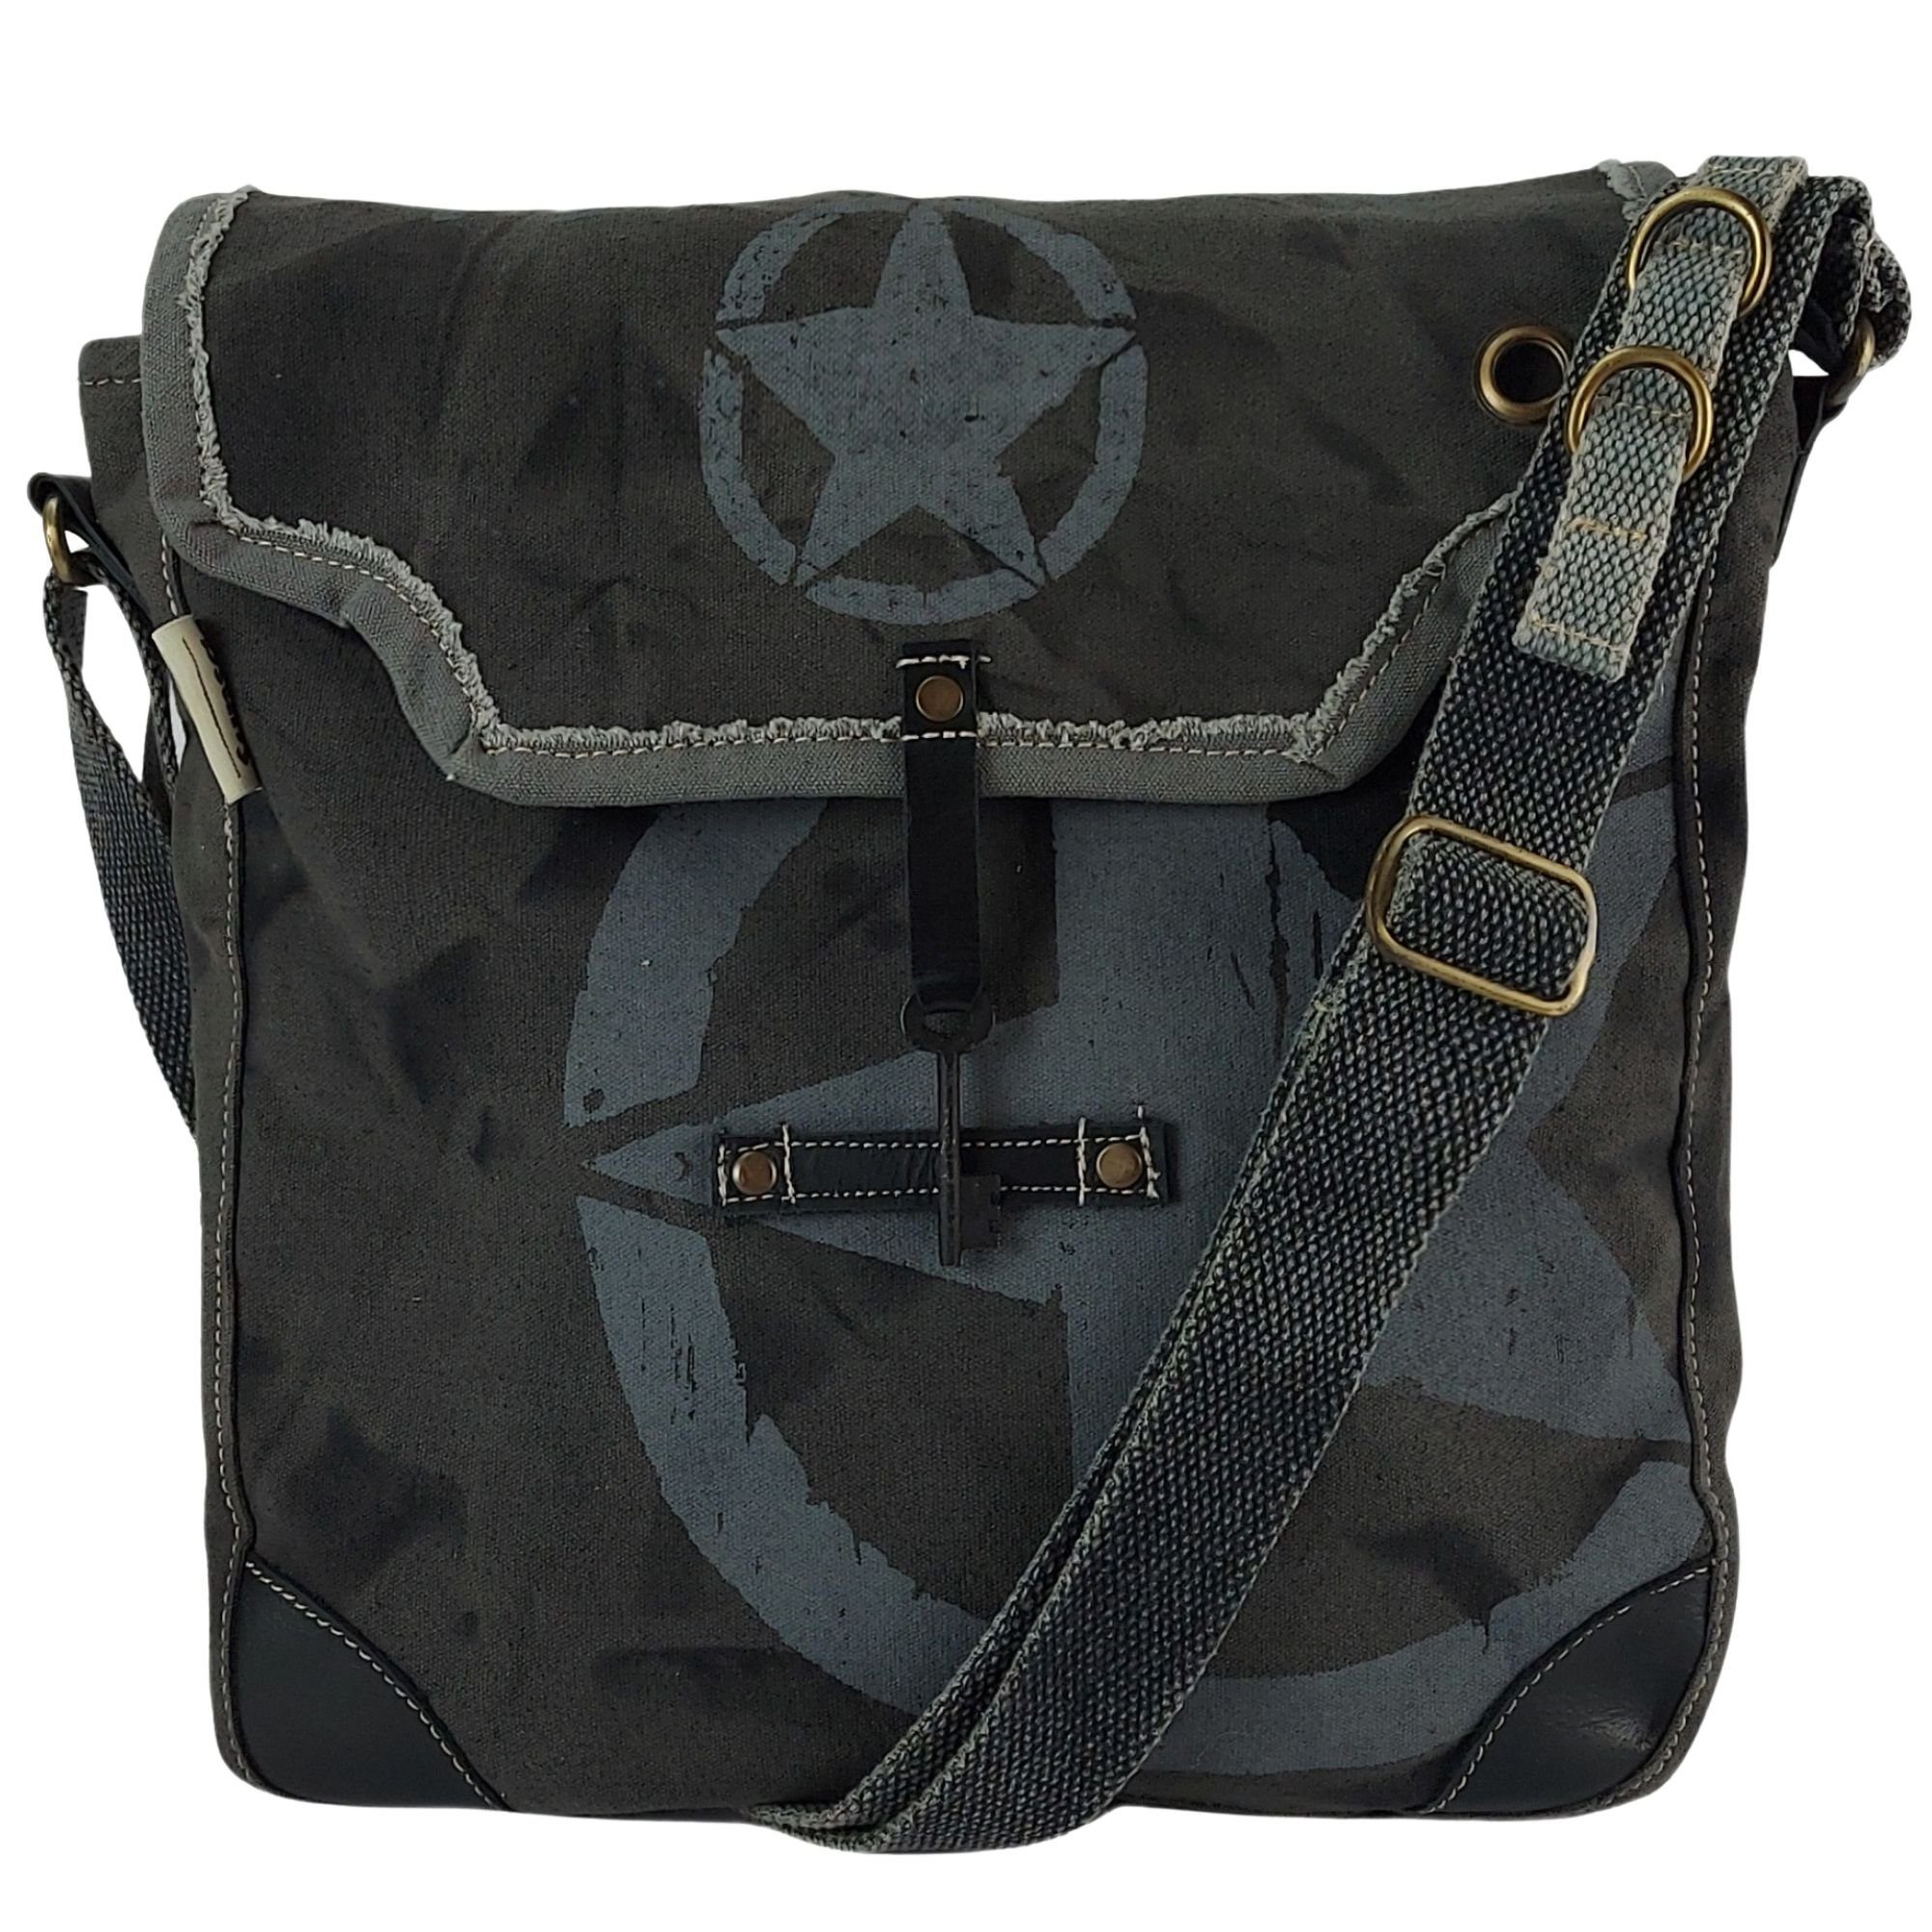 Sunsa Messenger Bag »Schwarze Umhängetasche große Vintage Crossbody Tasche  Schultertasche«, echt Leder, Stern Aufdruck